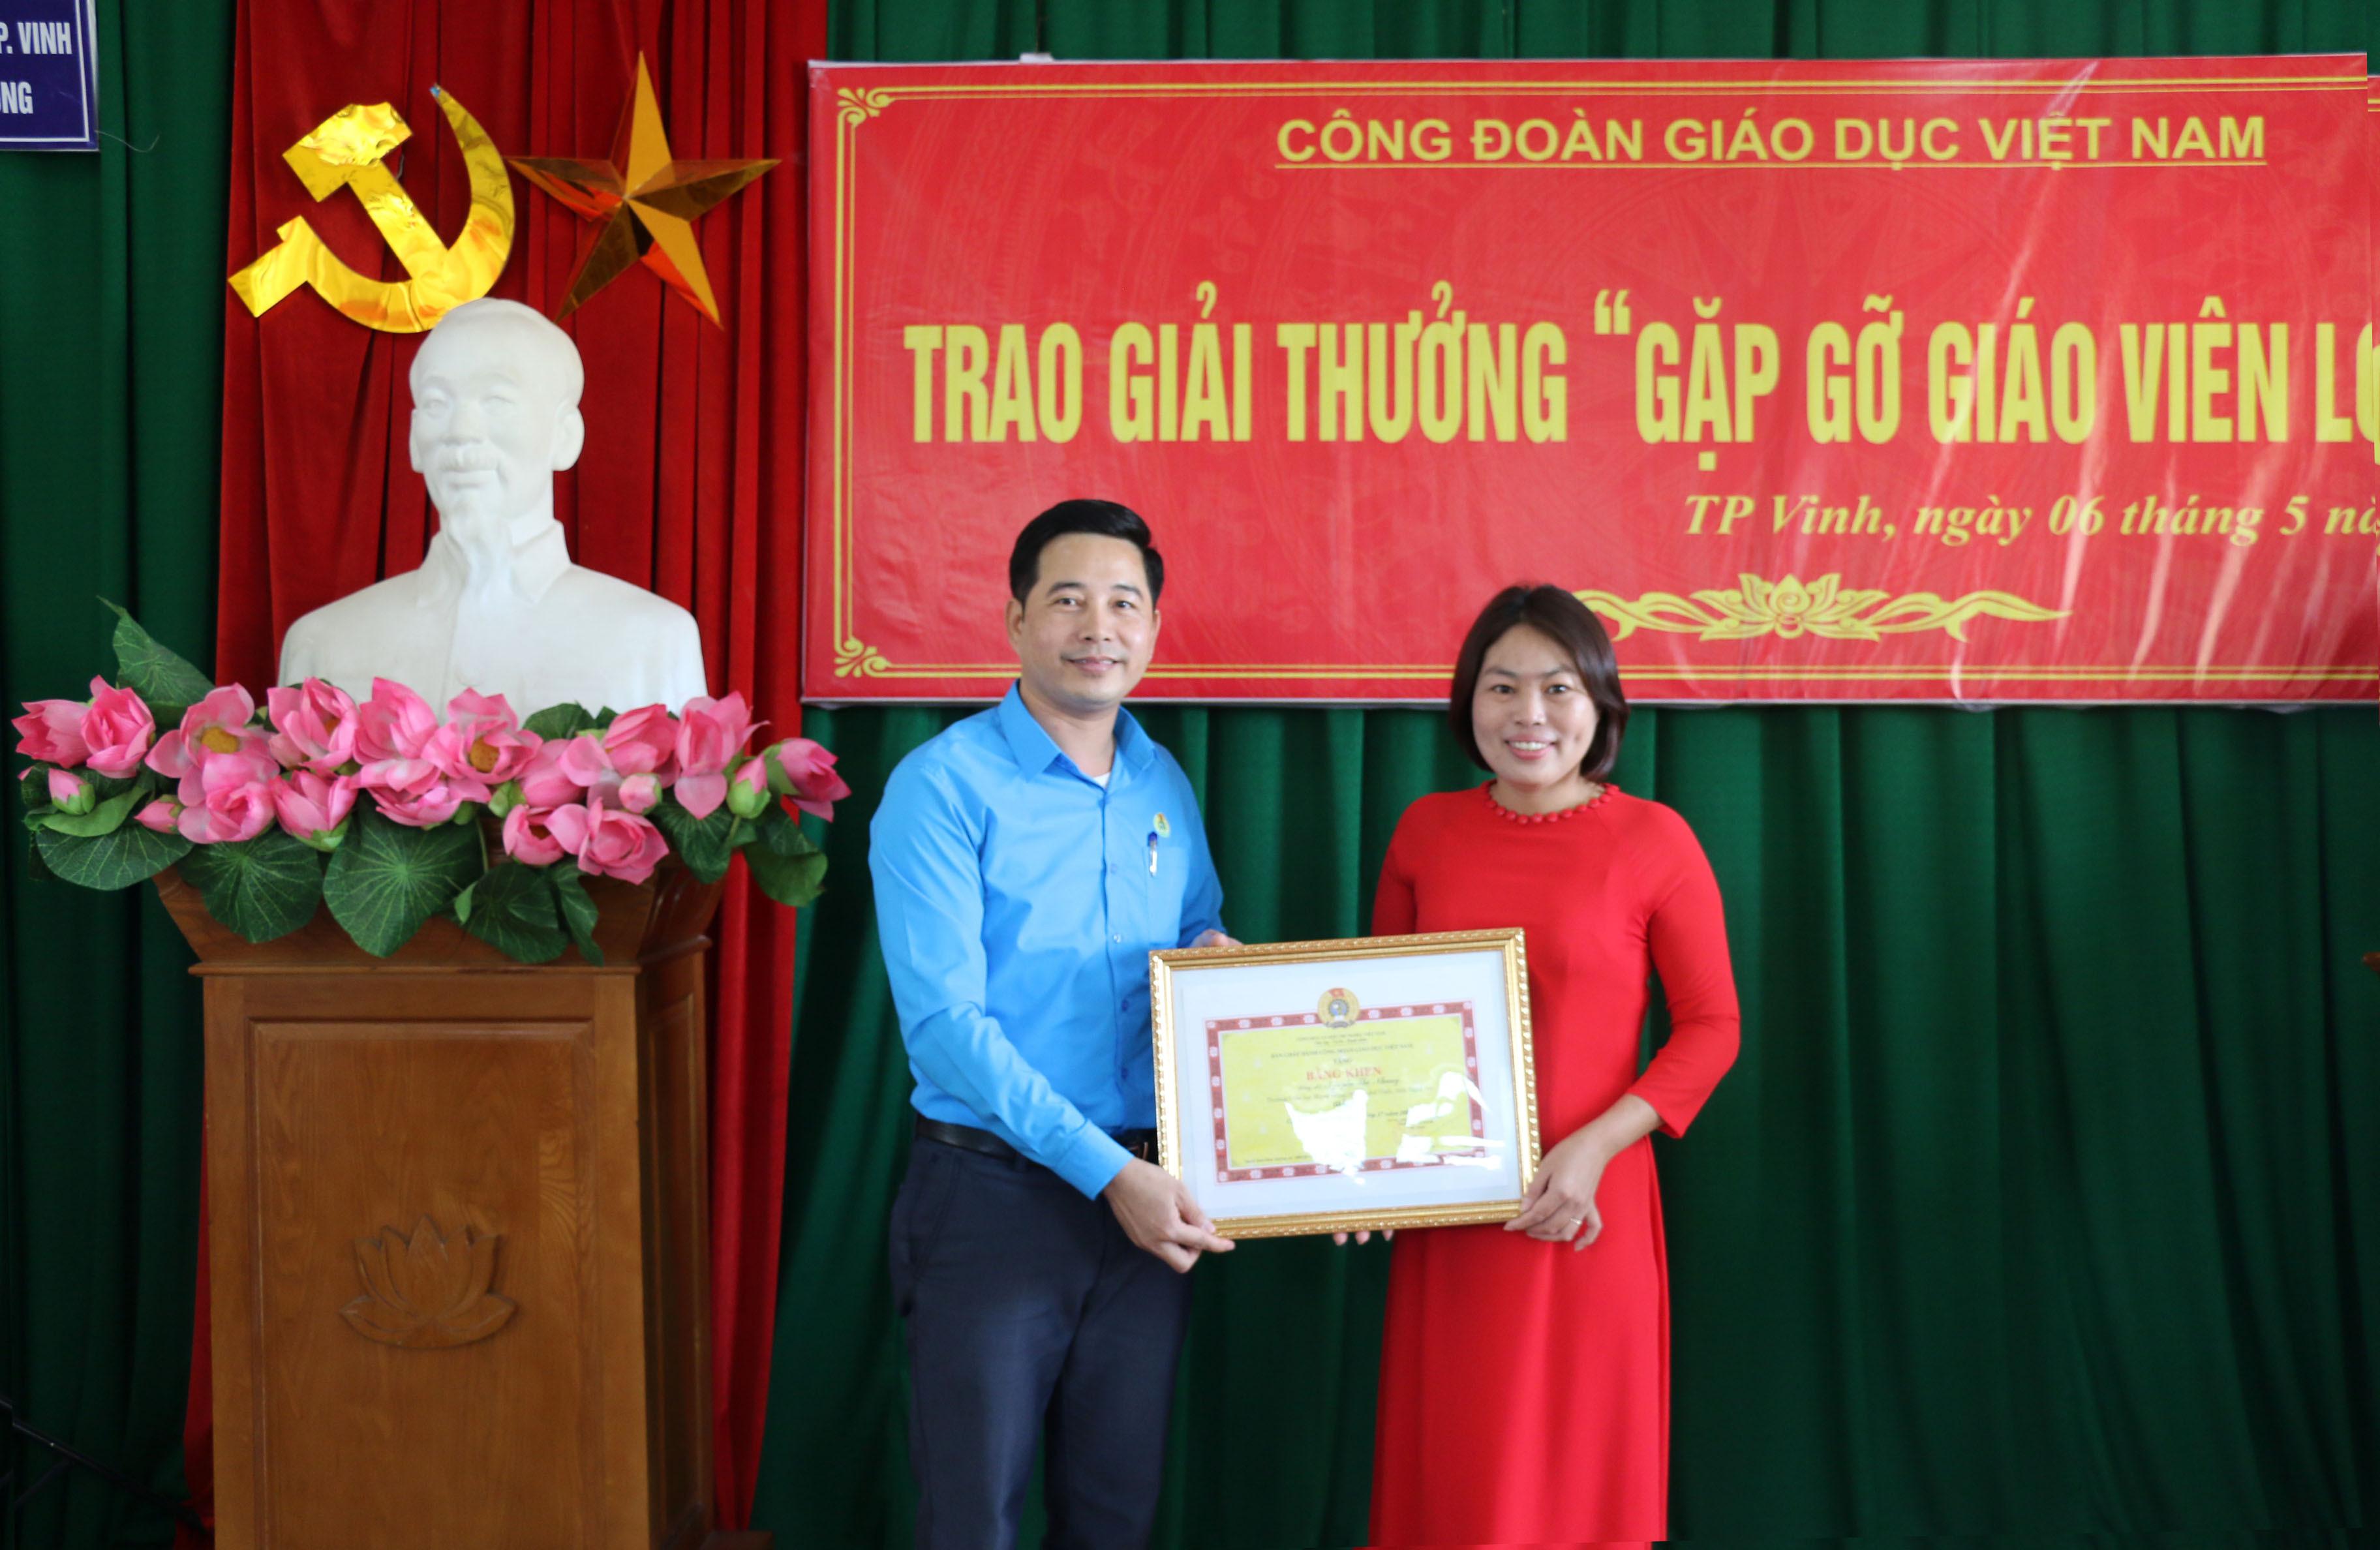 Ông Đặng Văn Hải trao giấy khen cho cô giáo Nguyễn Thị Nhung - giải Nhỉ cuộc thi Gặp gỡ giáo viên lớp 1. Ảnh: MH